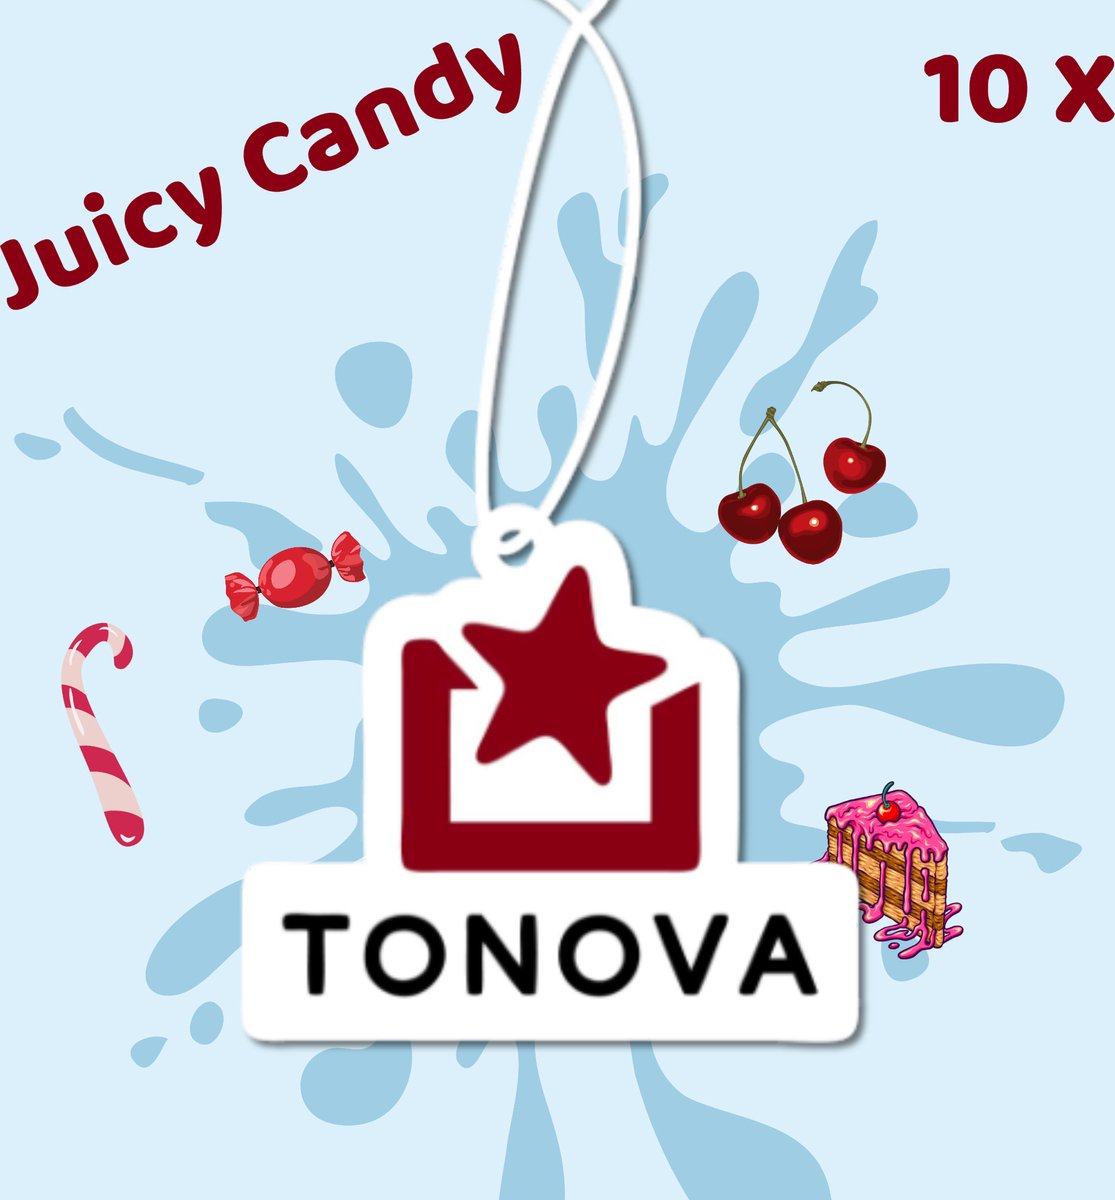 10 Pack Tonova Autoparfum - Geurboompje - Geurverstuiver - Luchtverfrisser - Juicy Candy